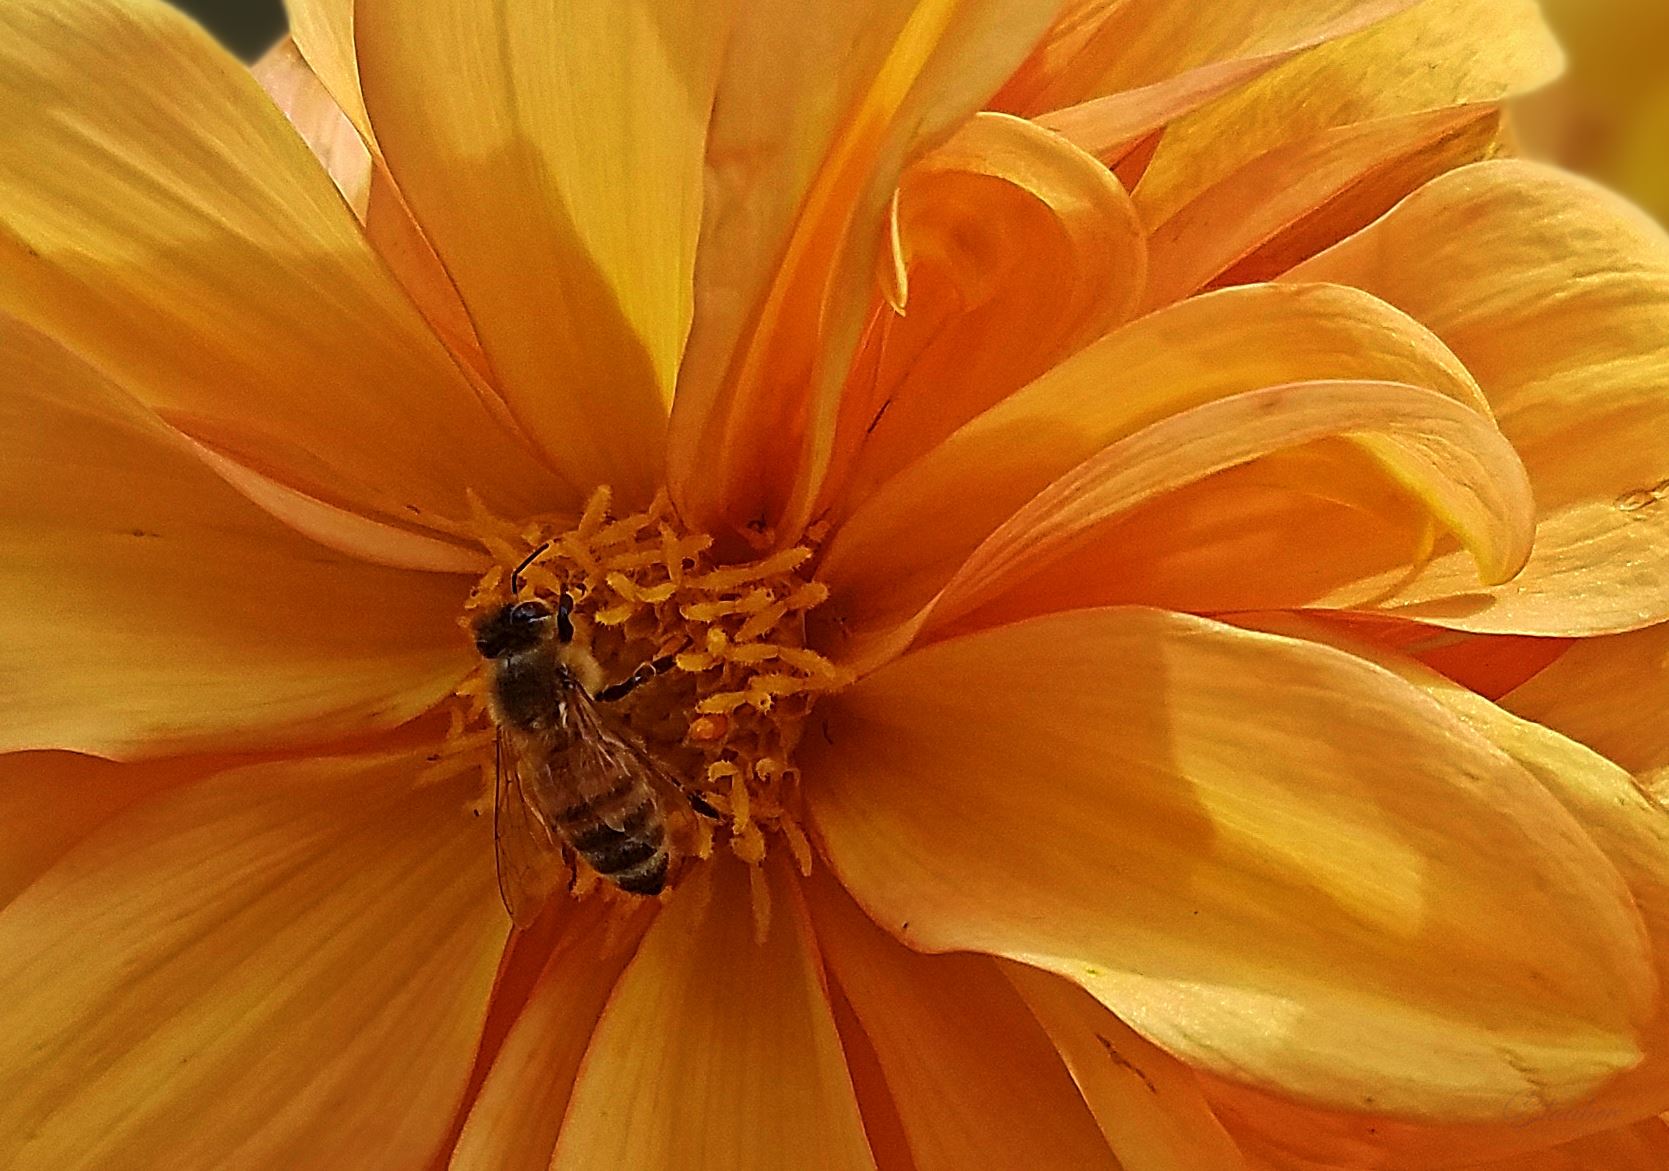 00-yellowflower-bee-20170930_123608C.jpg -  by CLStauber Photography